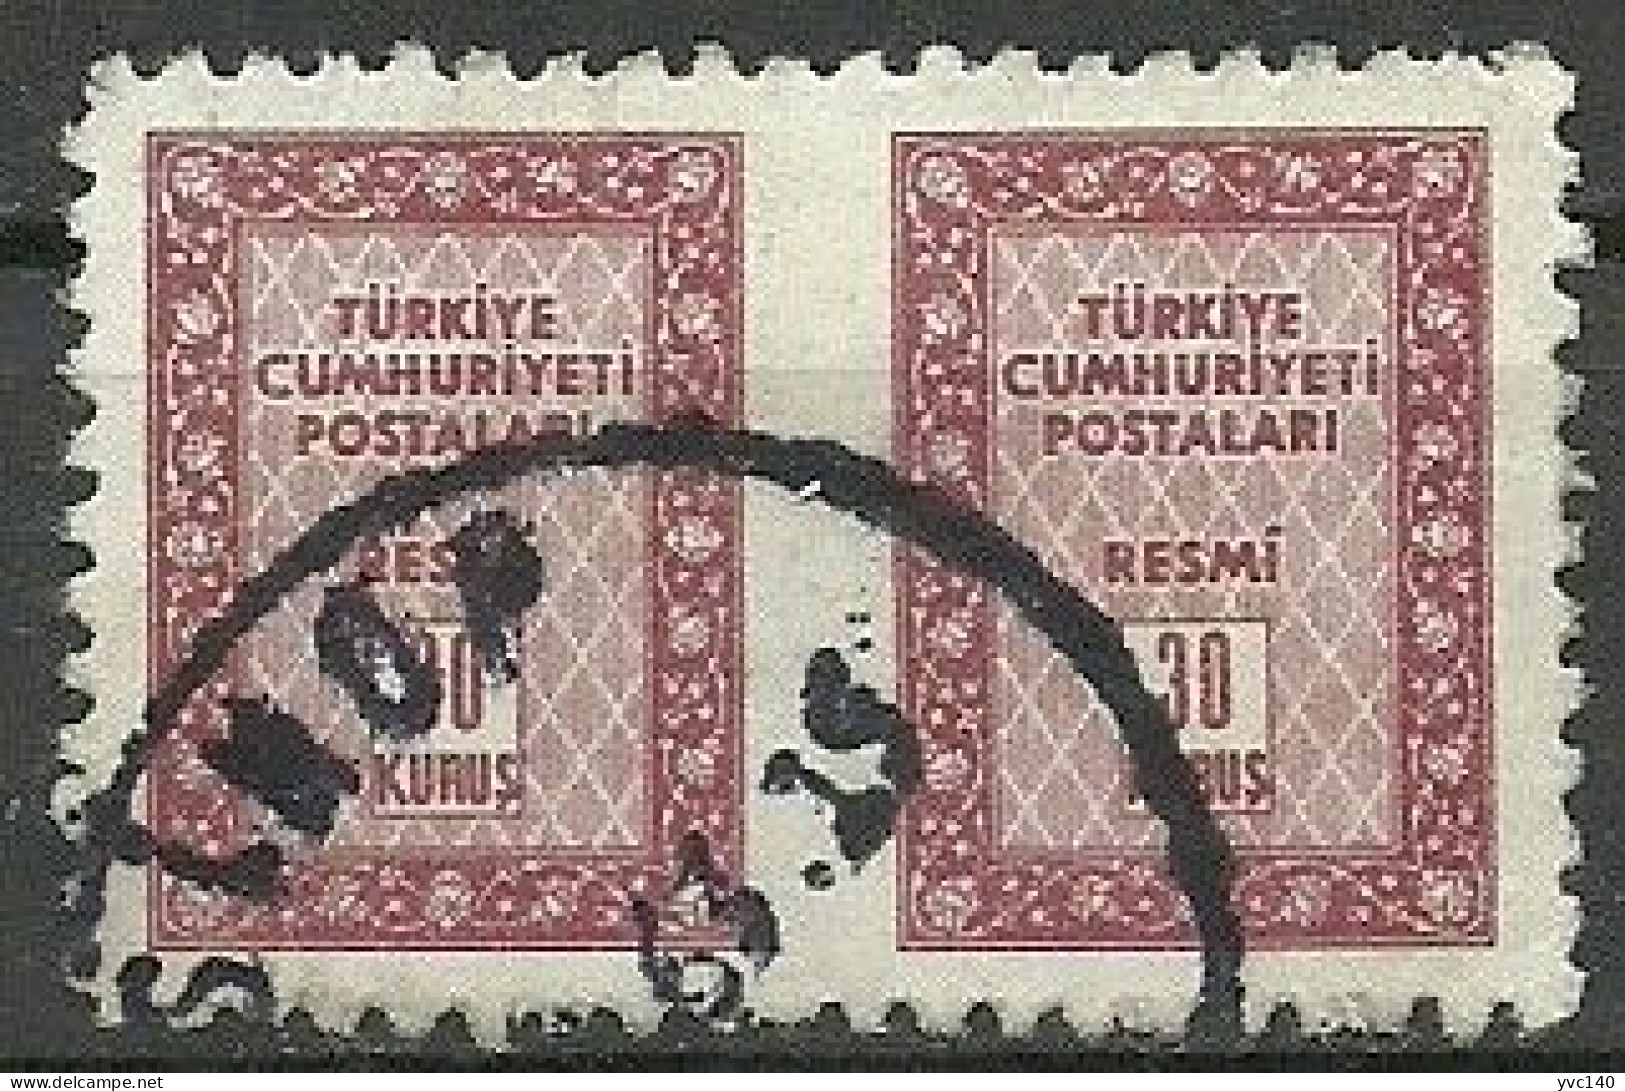 Turkey; 1960 Official Stamp 30 K. ERROR "Partially  Imperf." - Dienstzegels